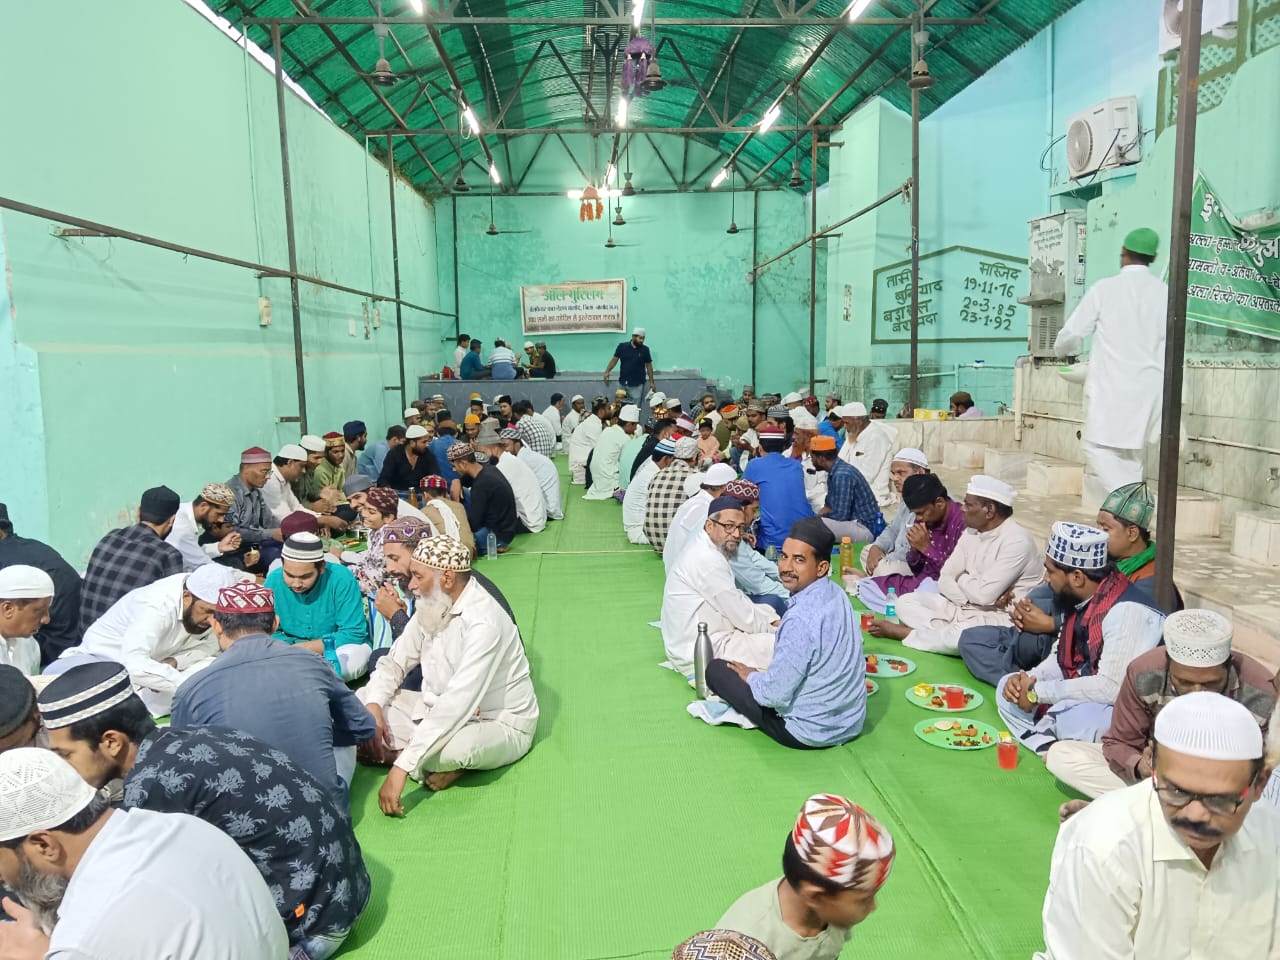 पवित्र माह रमज़ान में रोजदारों की इबादत जारी , बड़ी संख्या में समाज के लोग हो रहे शामिल